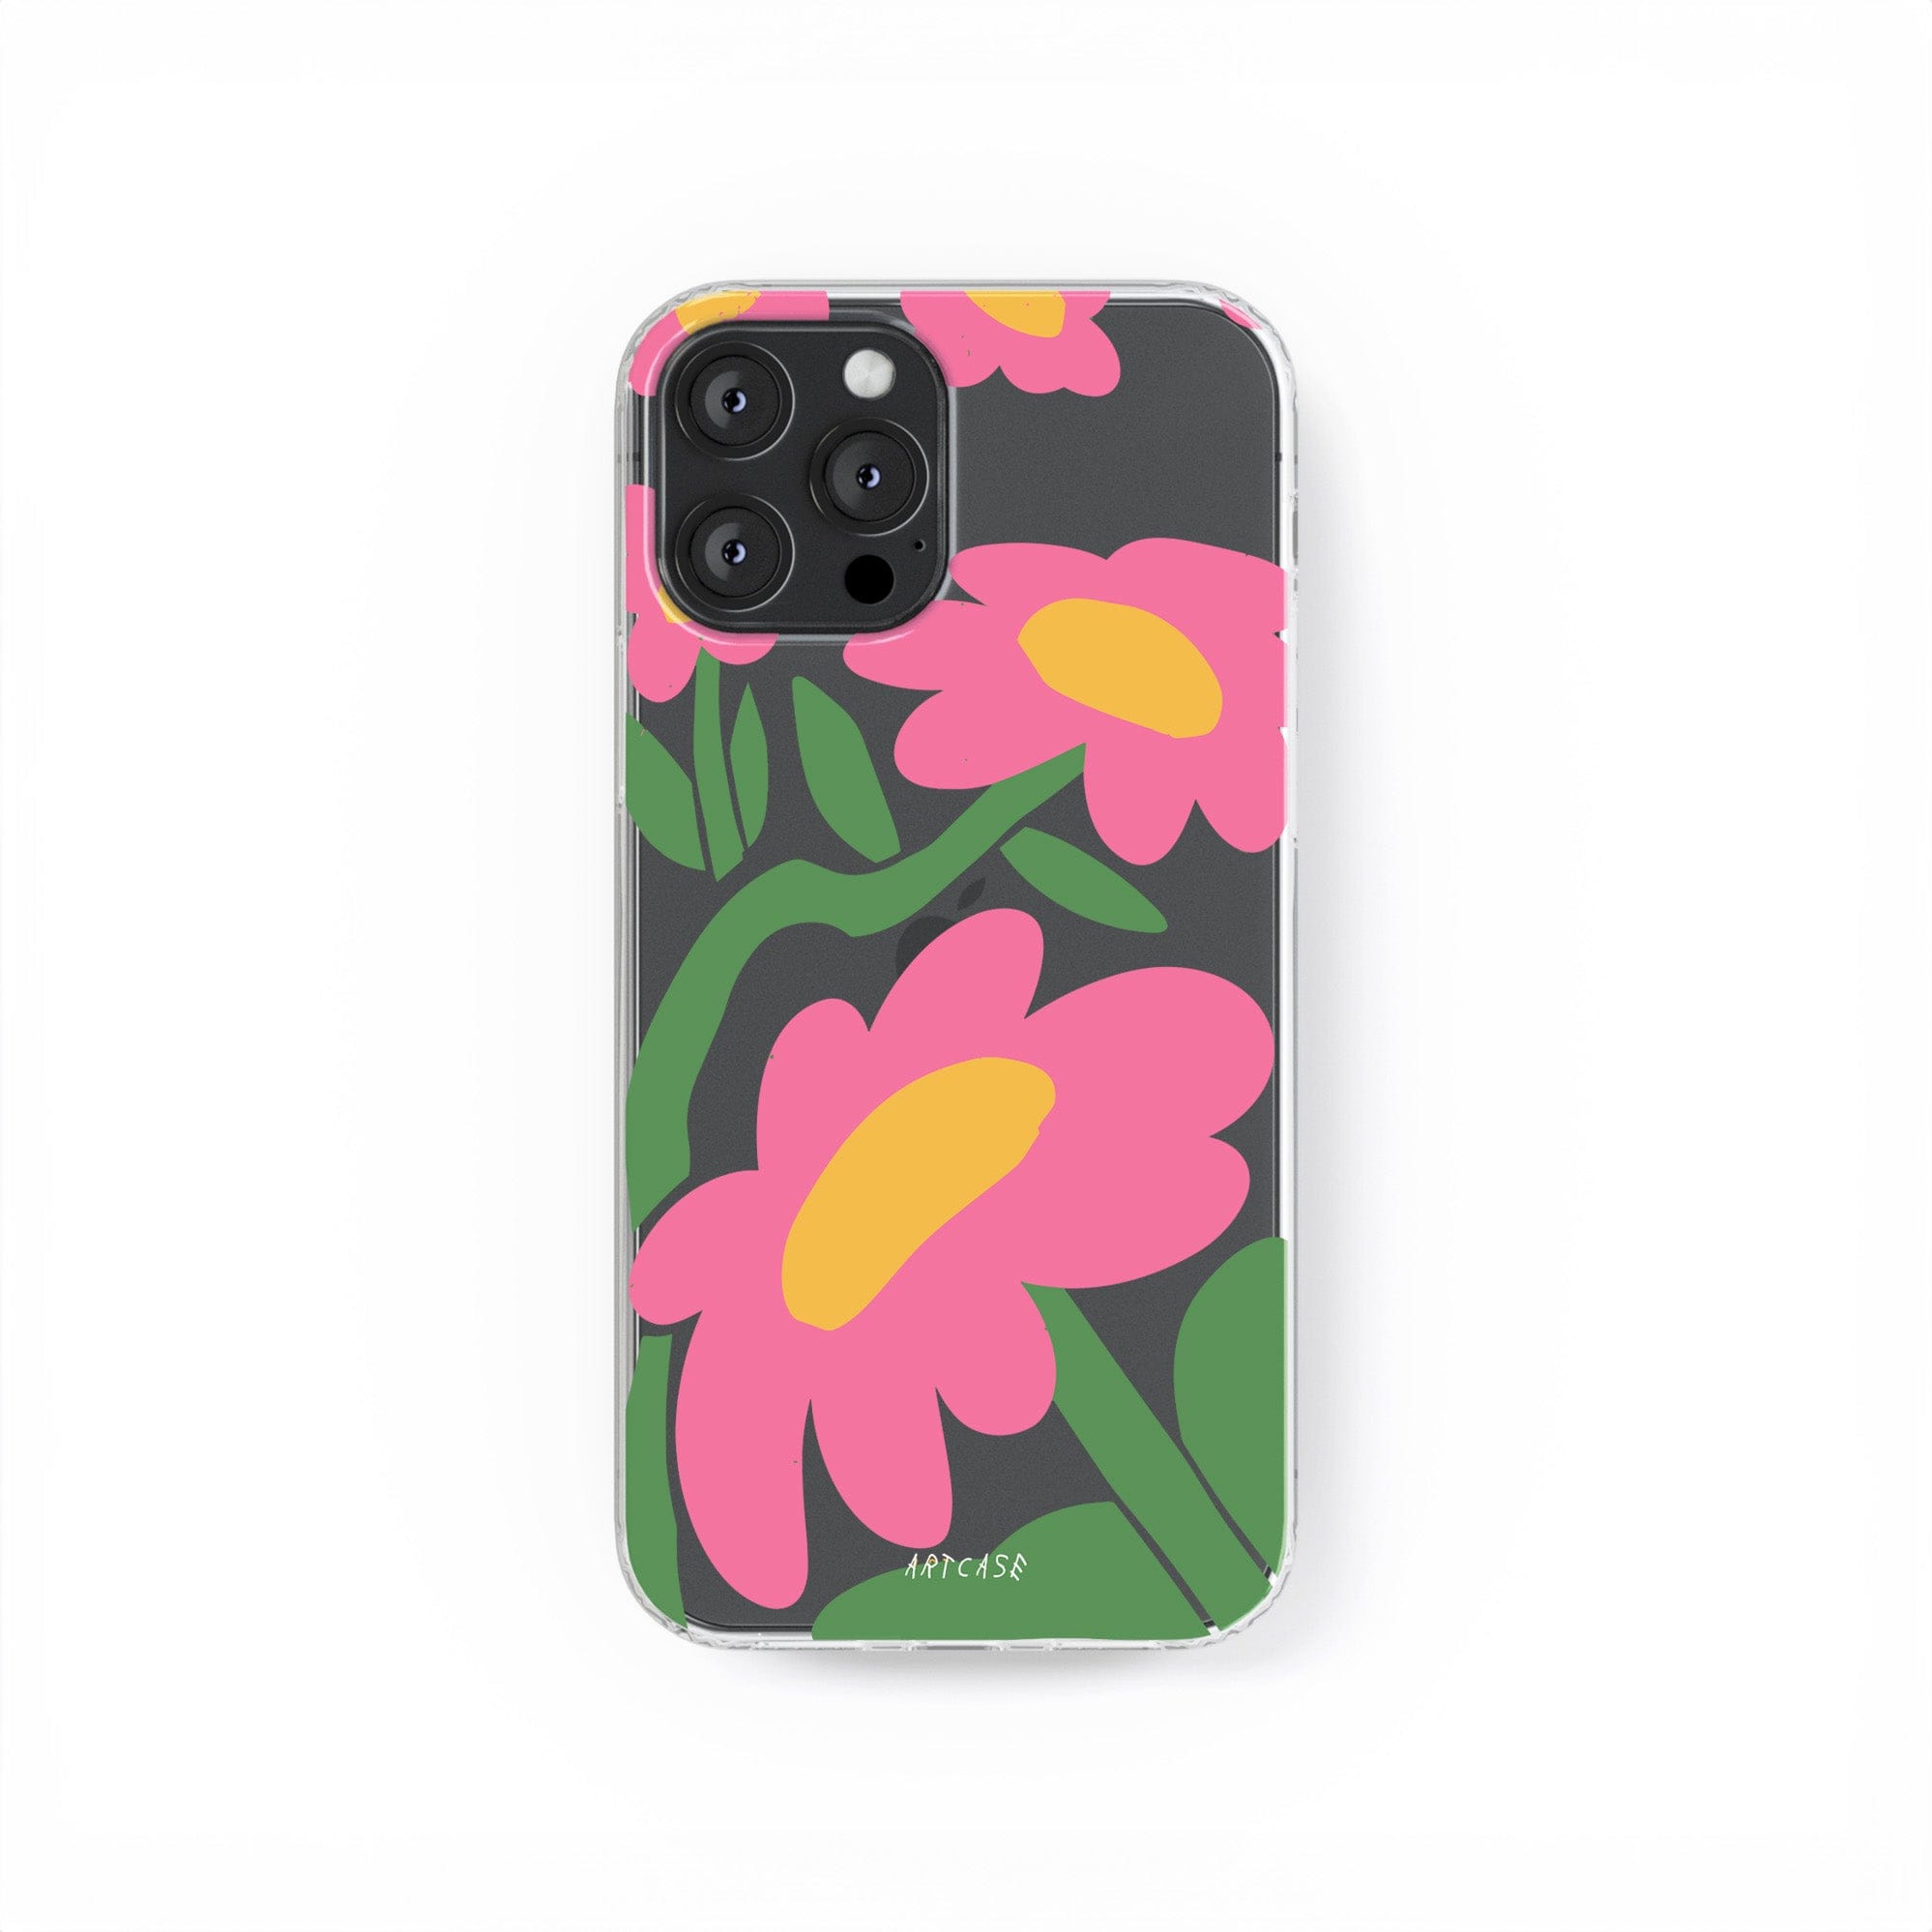 Transparent silicone case "Blossom"